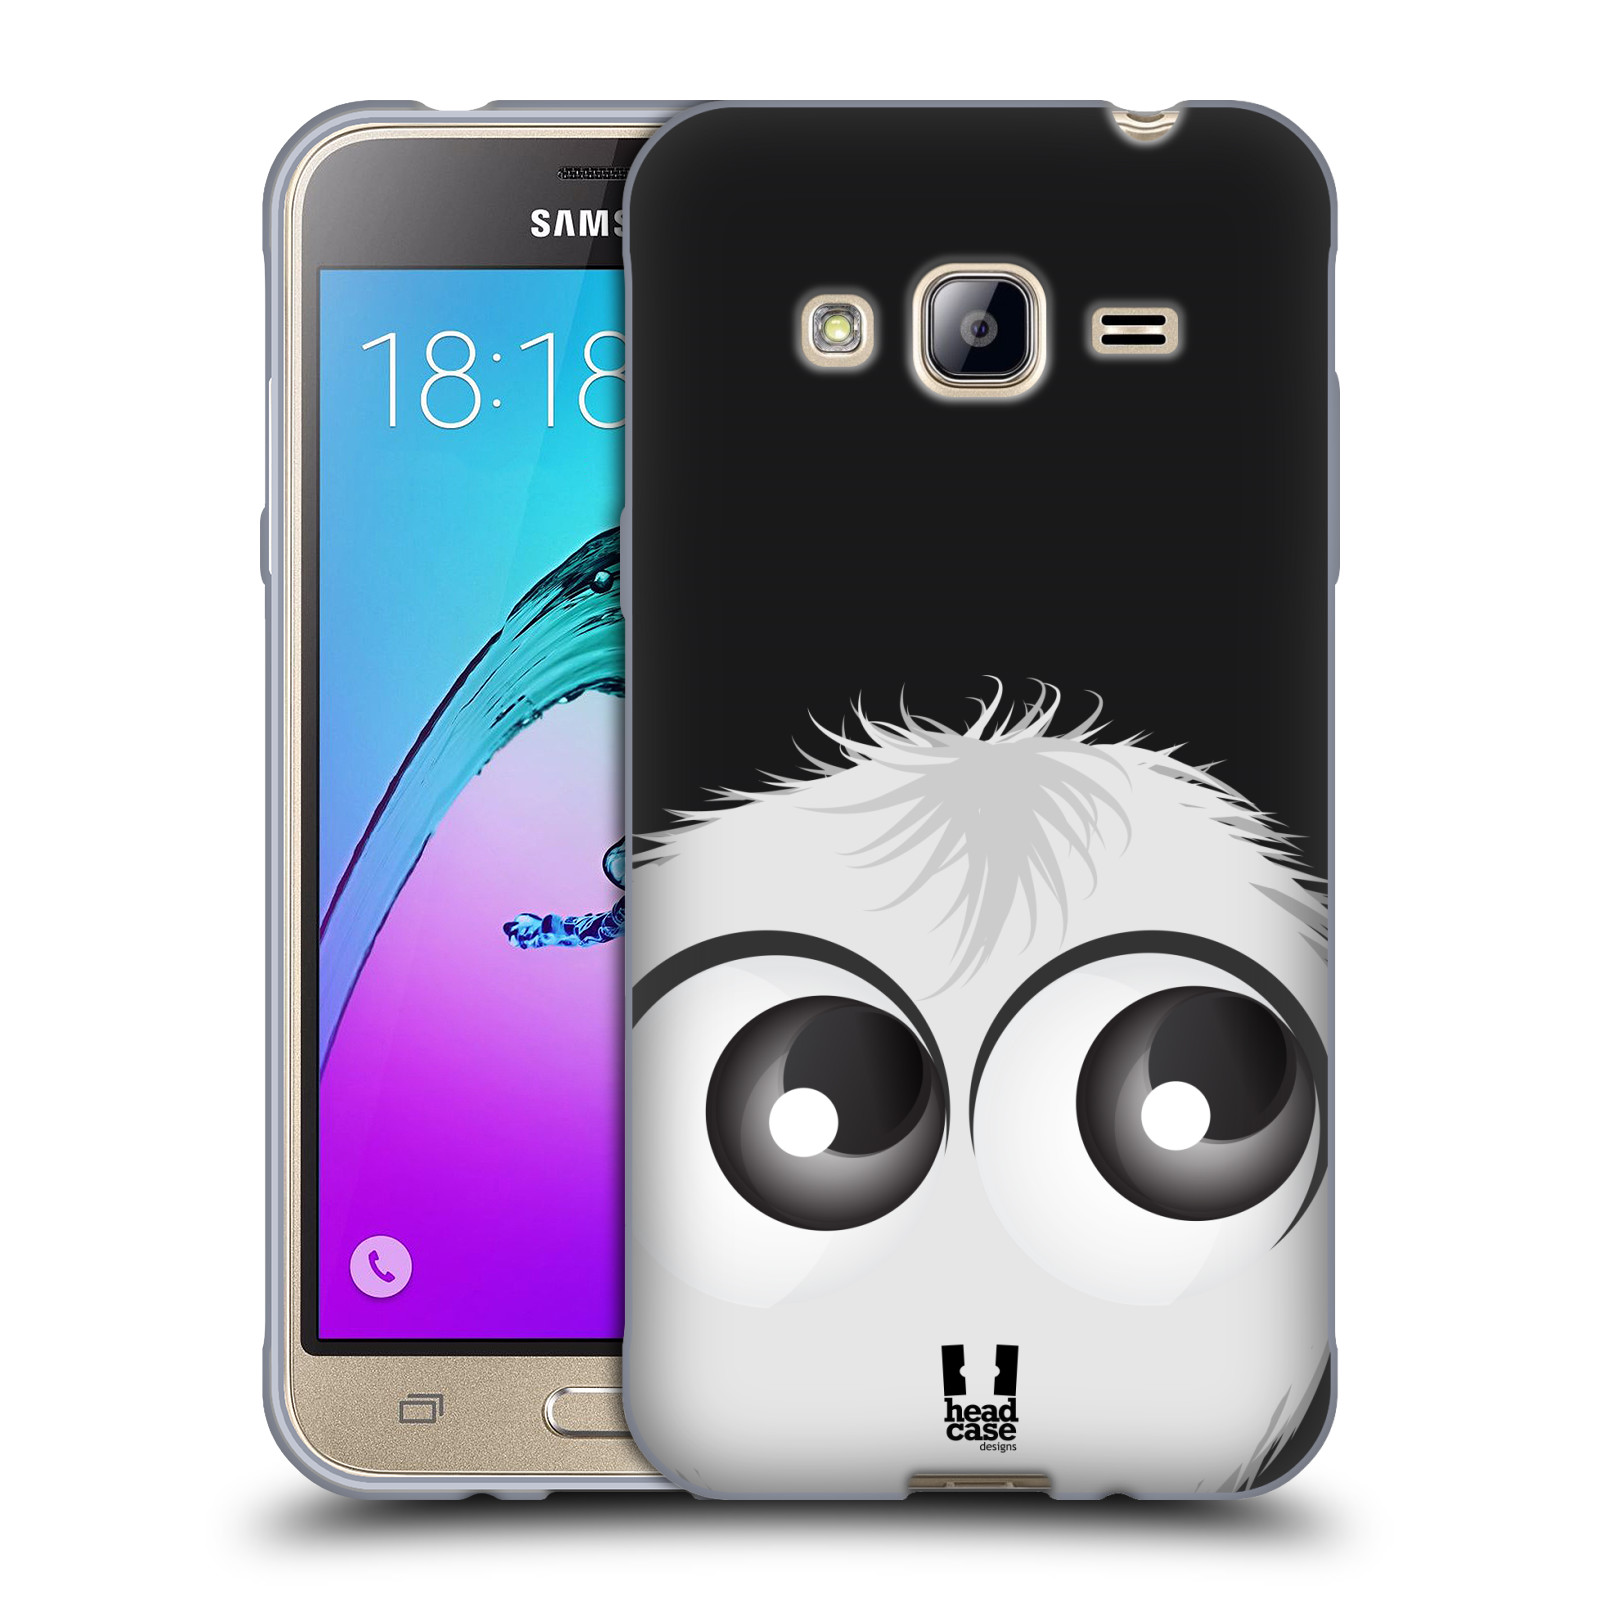 HEAD CASE silikonový obal na mobil Samsung Galaxy J3, J3 2016 vzor Barevný chlupatý smajlík BÍLÁ černé pozadí